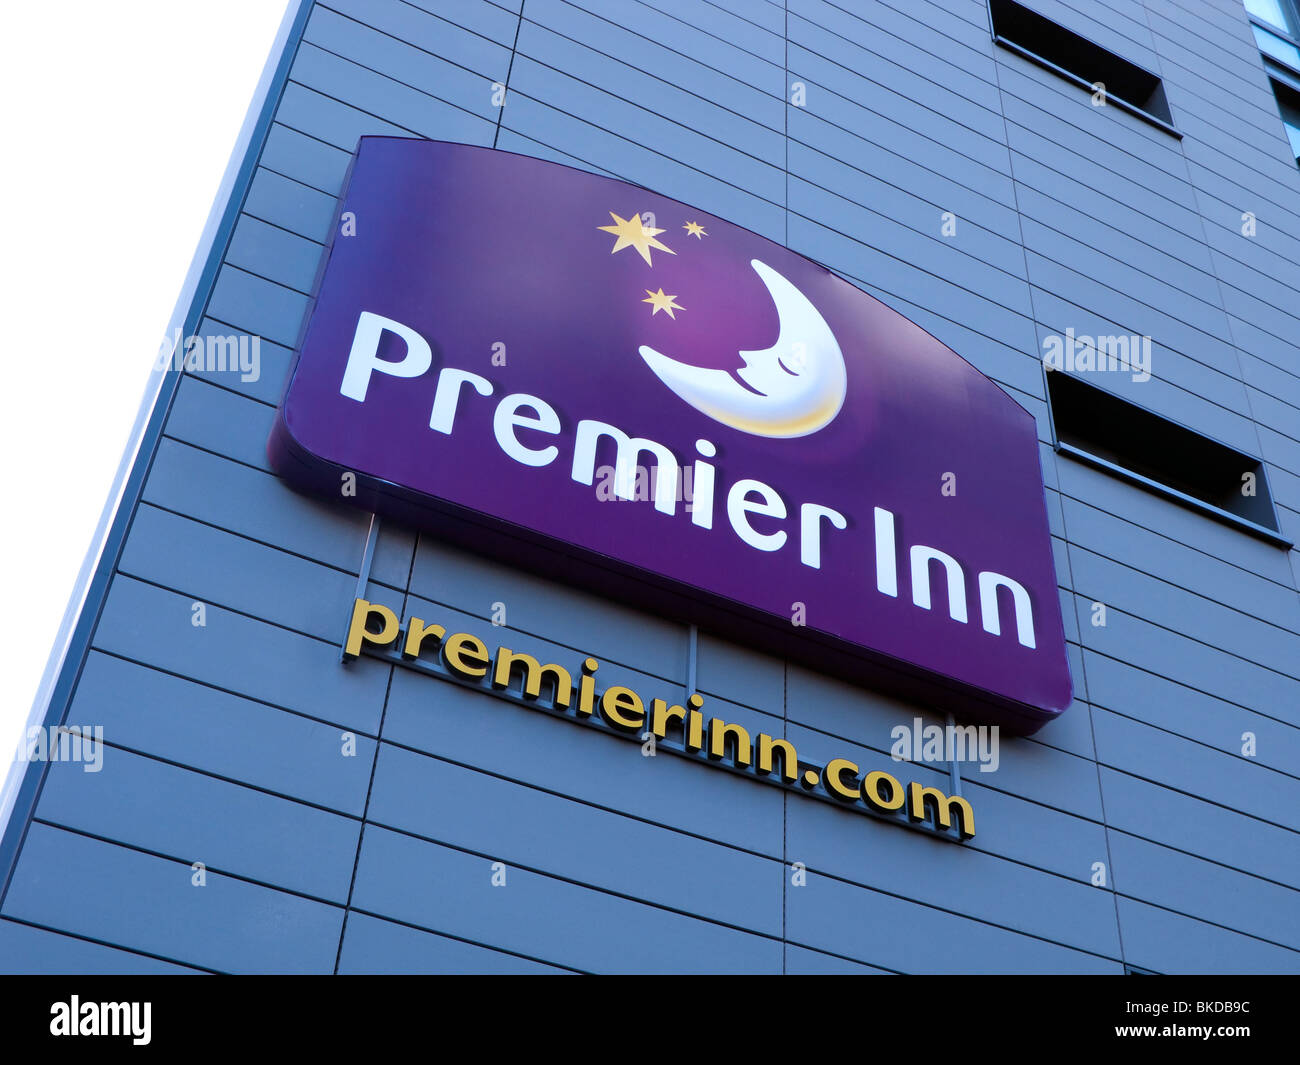 Premier Inn sign and logo Stock Photo